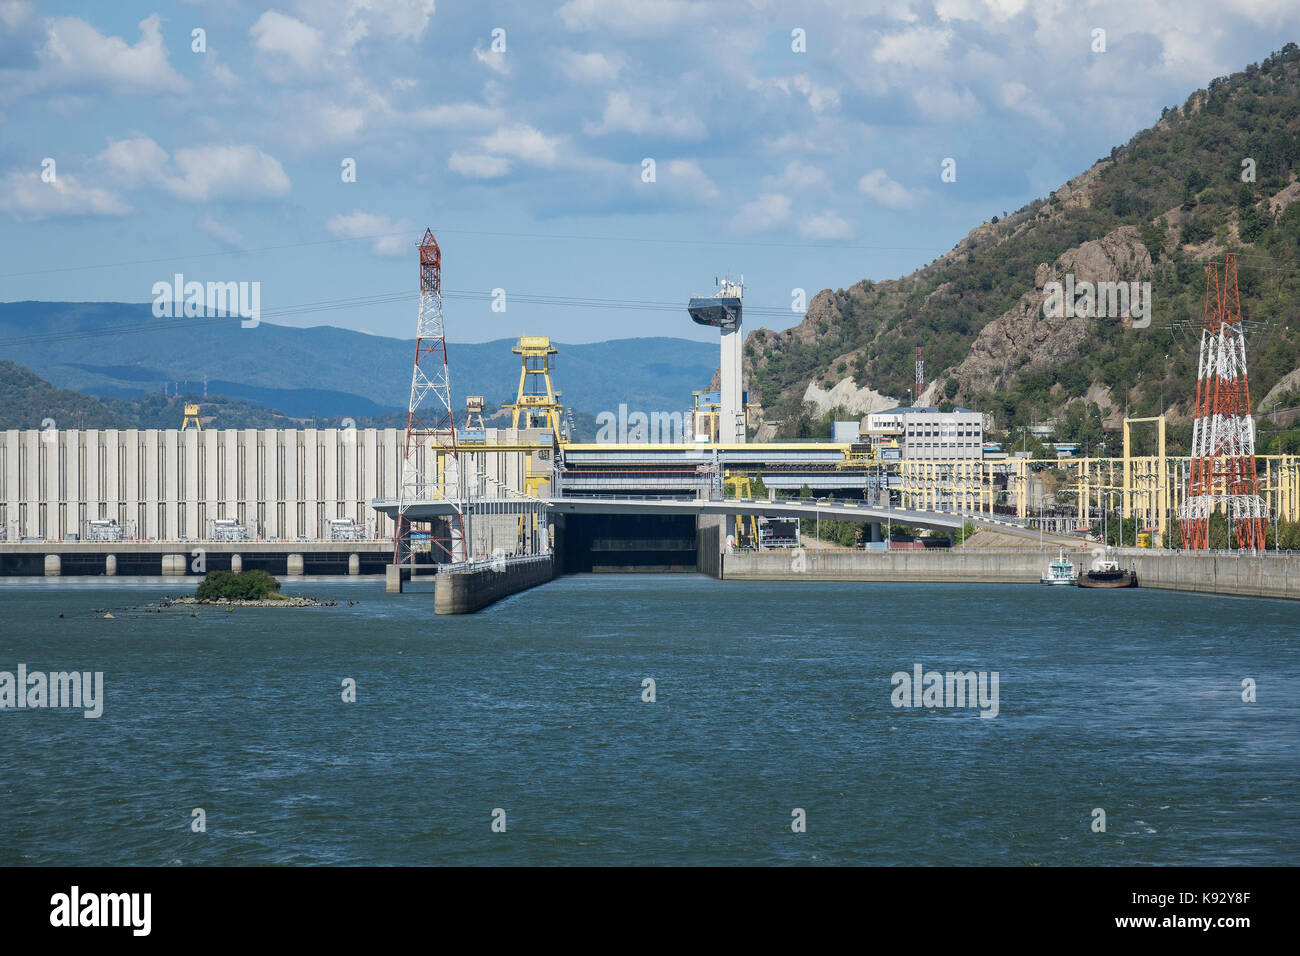 La Romania, il fiume Danubio, iron gate lock n.1 & centrale idroelettrica Foto Stock